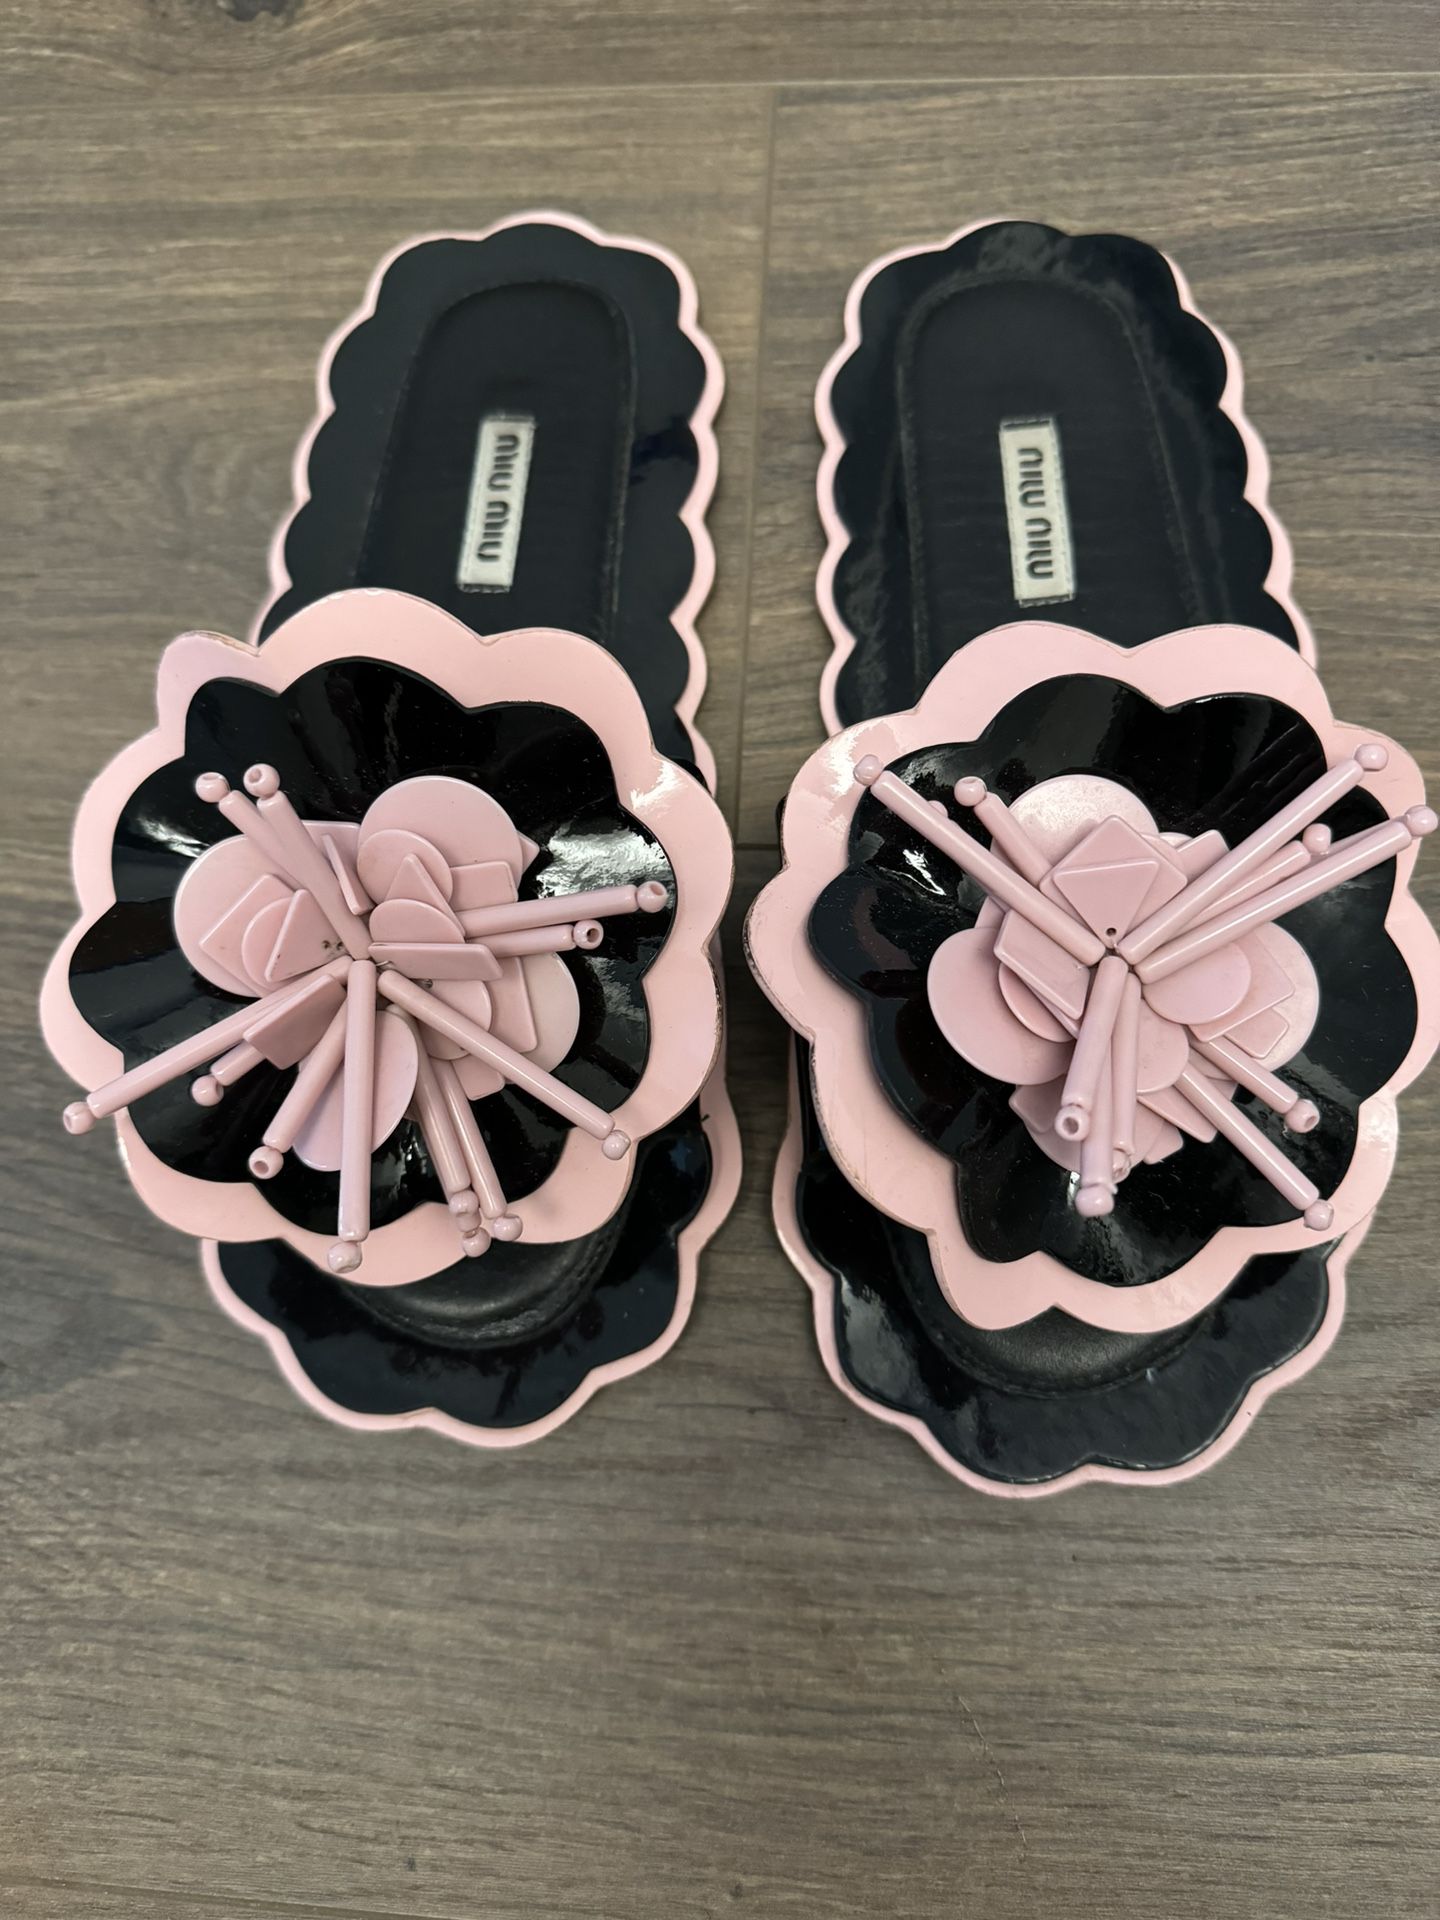 Flip Flop Black Pink Flat Slide Sandals Pattent Leather Size 37